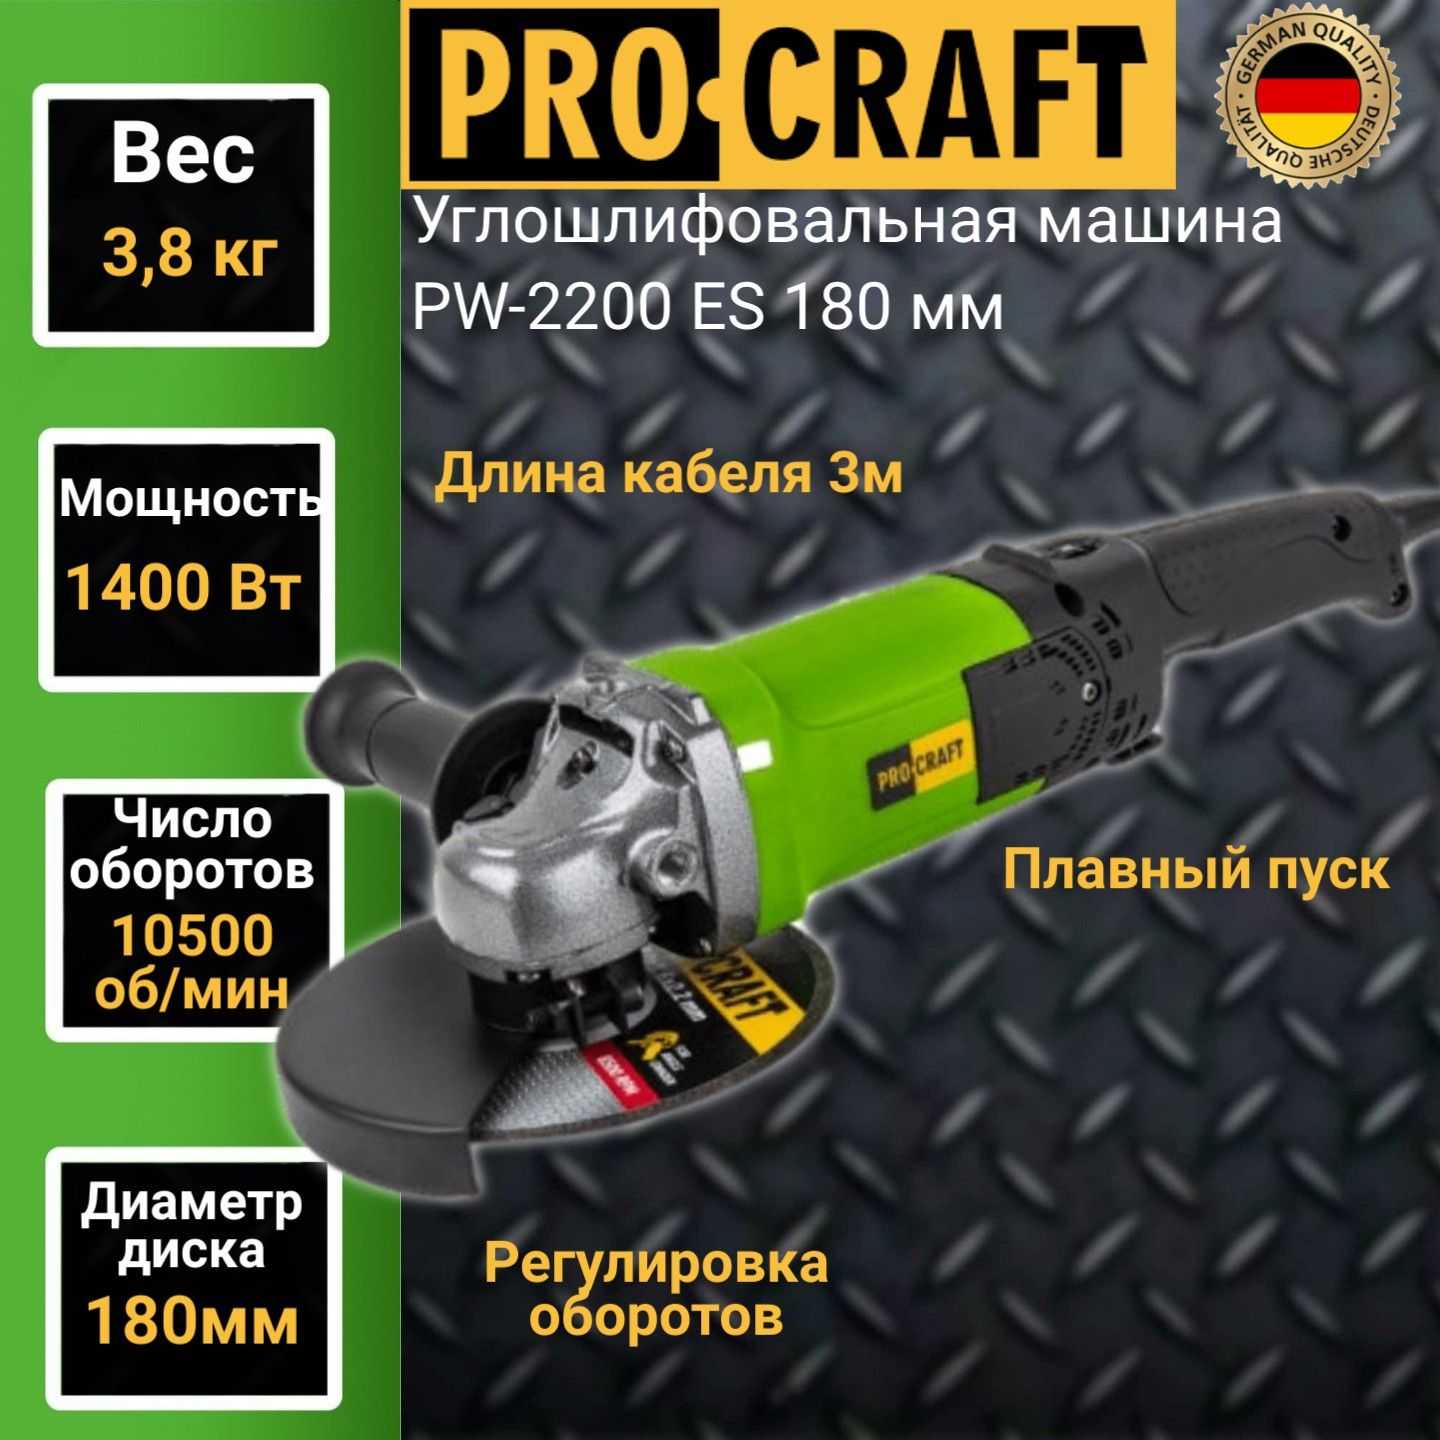 Углошлифовальная машина болгарка Procraft PW-2200ЕS, 180мм круг, 1400Вт, 10500об/мин углошлифовальная машина kress ku721